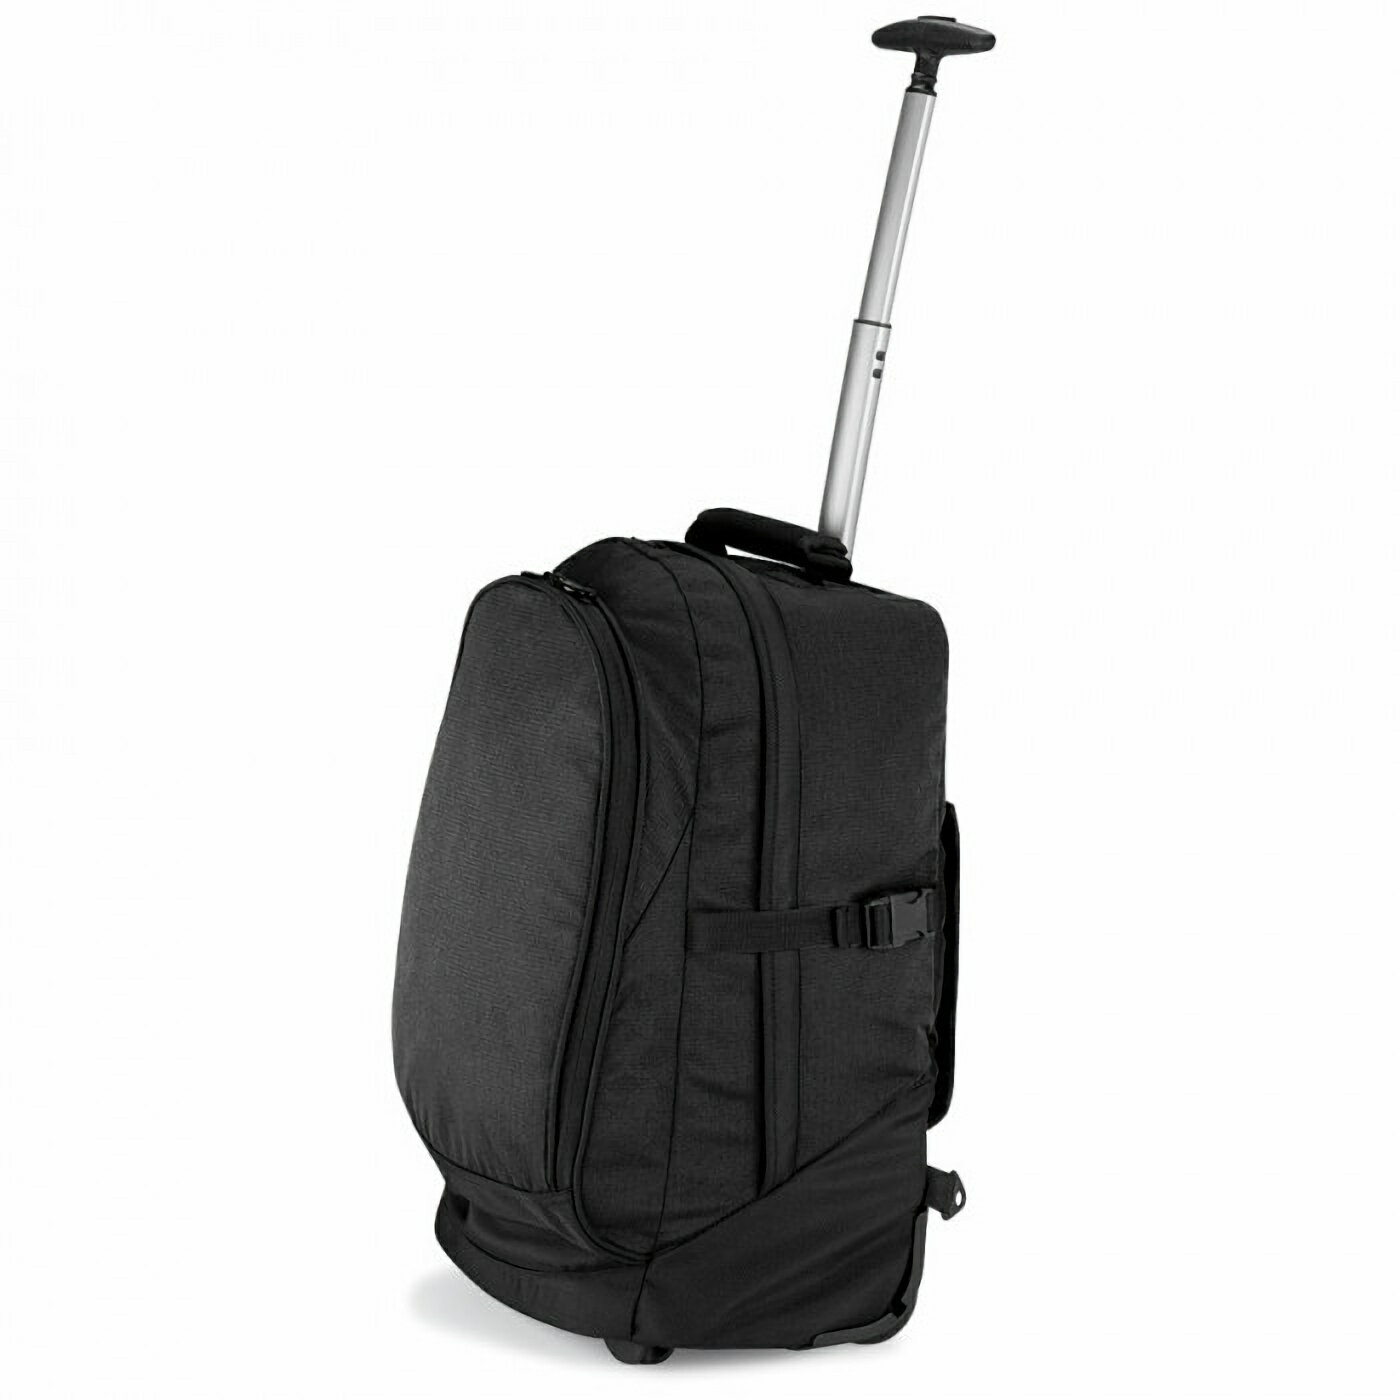 (クオドラ) Quadra Vessel エアポーター 機内持ち込み可能 トラベルバッグ スーツケース 旅行鞄 (28L) 【海外通販】